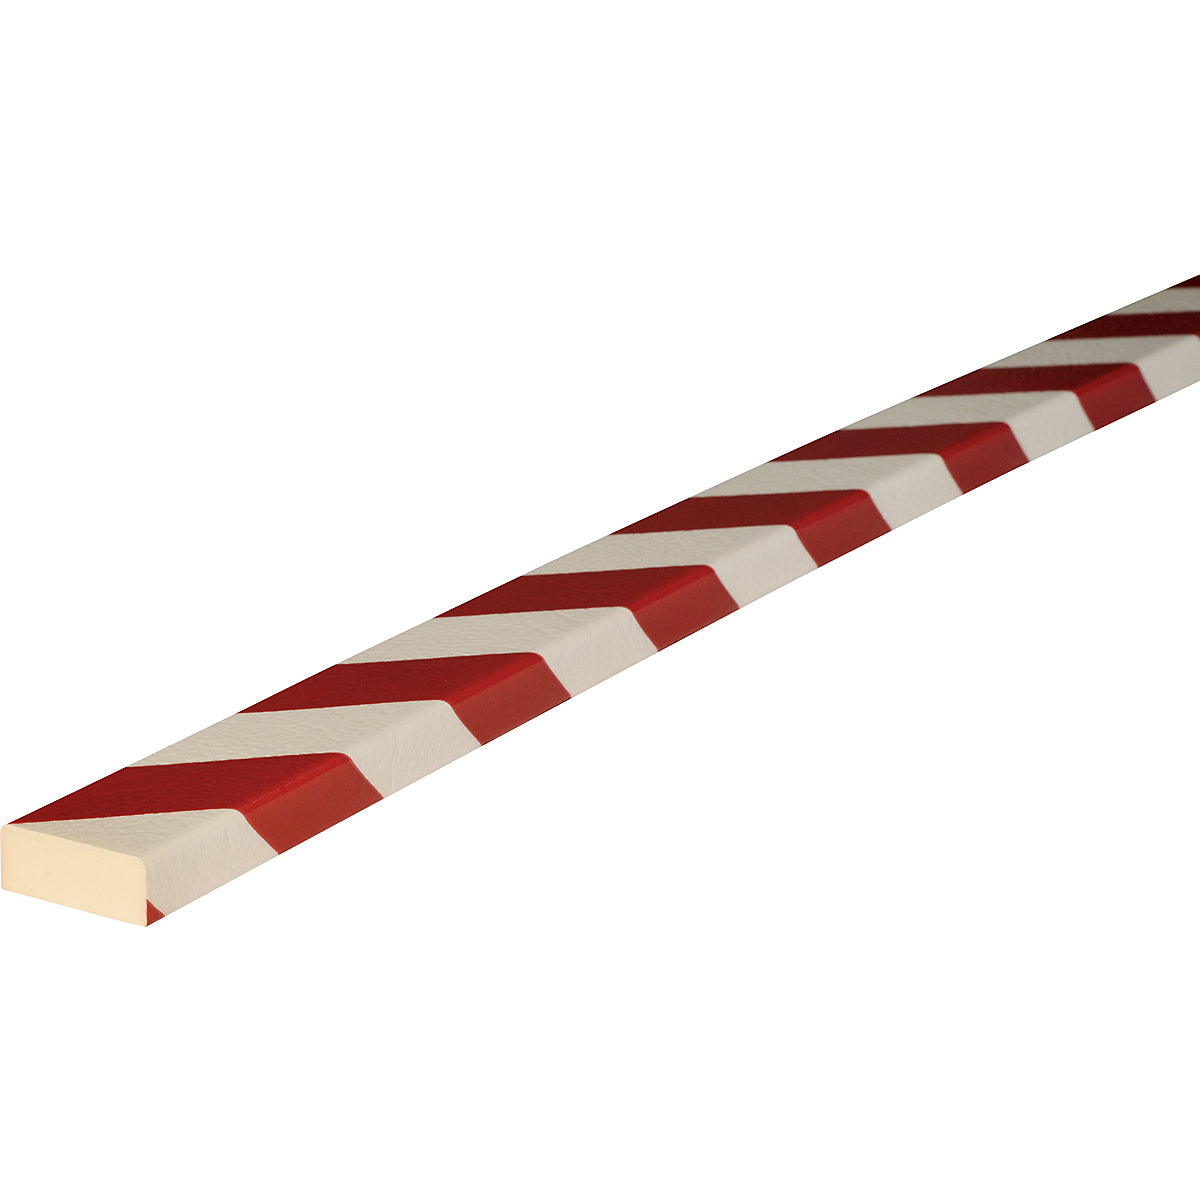 Protection des surfaces Knuffi® – SHG, type D, découpe au mètre linéaire, rouge / blanc